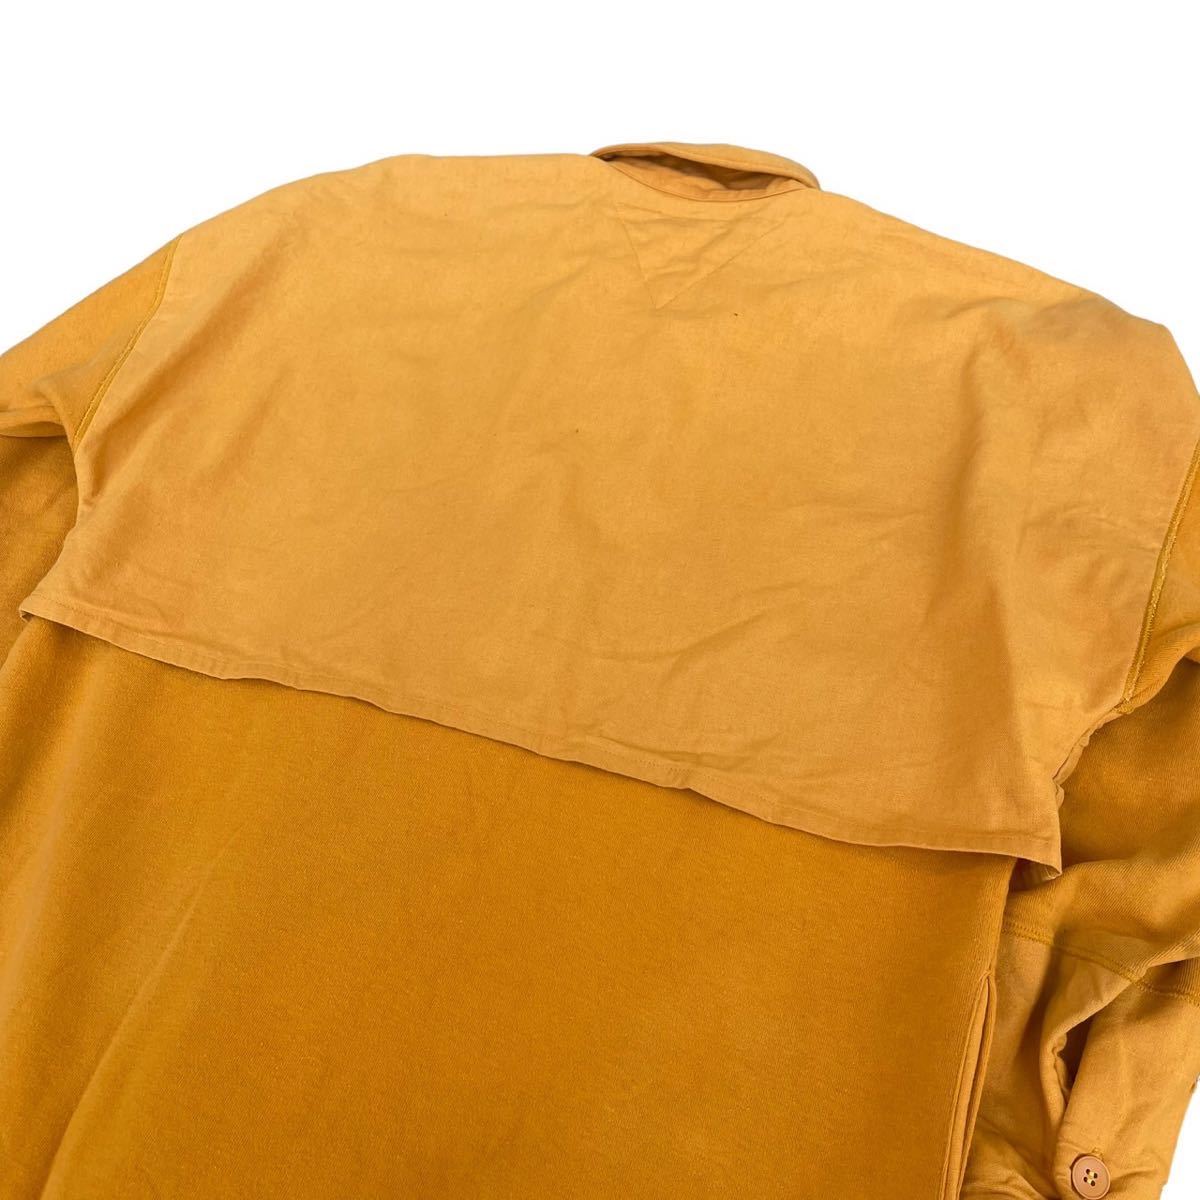 初期 Hai Sporting Gear ISSEY MIYAKE docking coat jacket ハイスポーティングギア イッセイミヤケ コート Archive Ika イカ 80s Rare_画像5